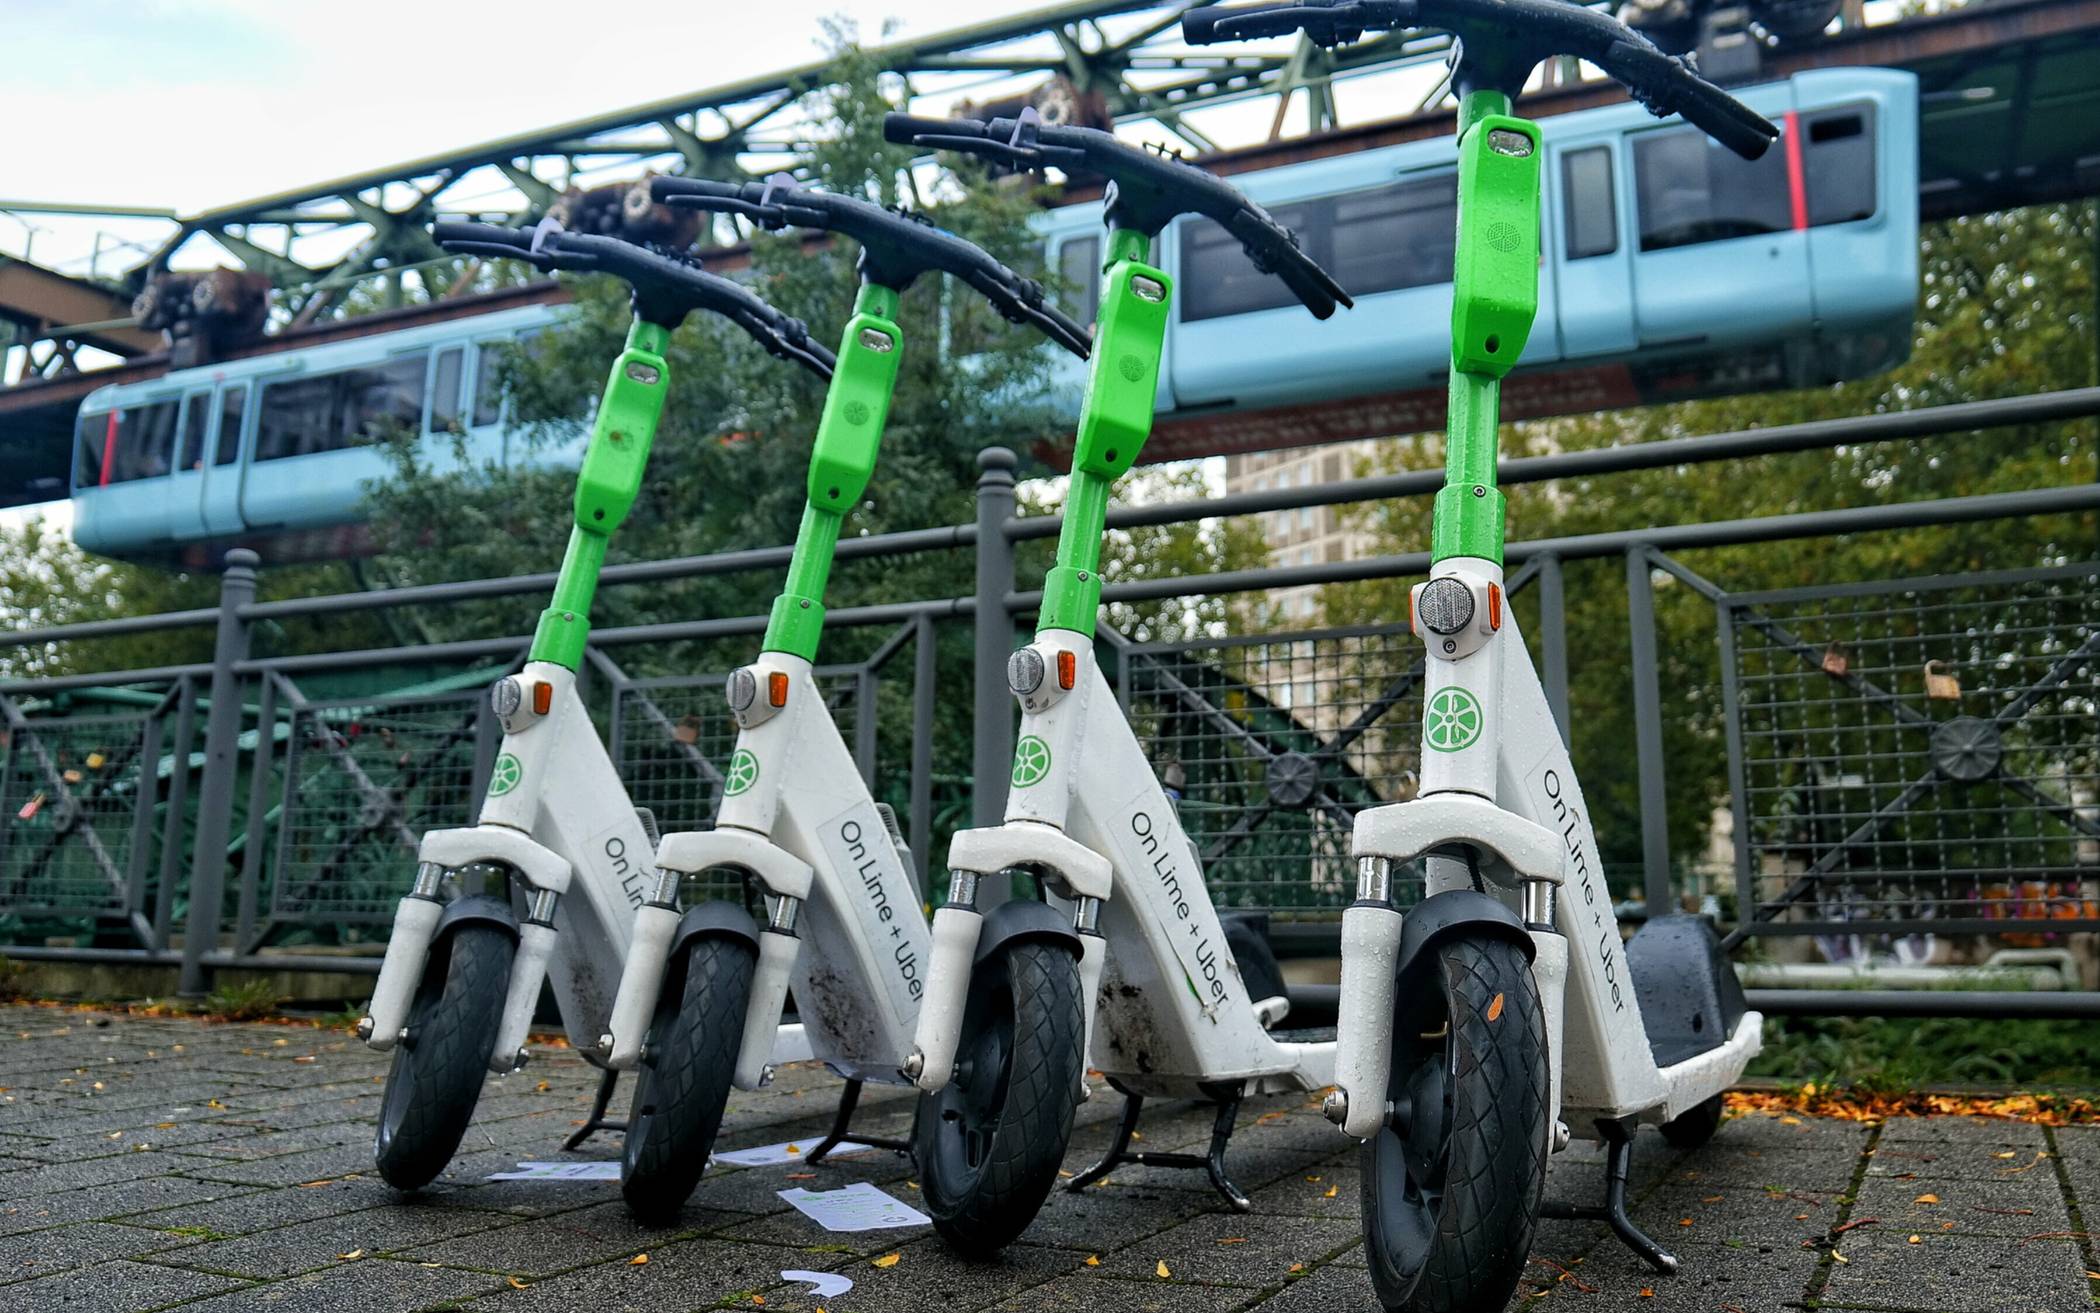 Verleih von E-Scootern und E-Bikes gestartet